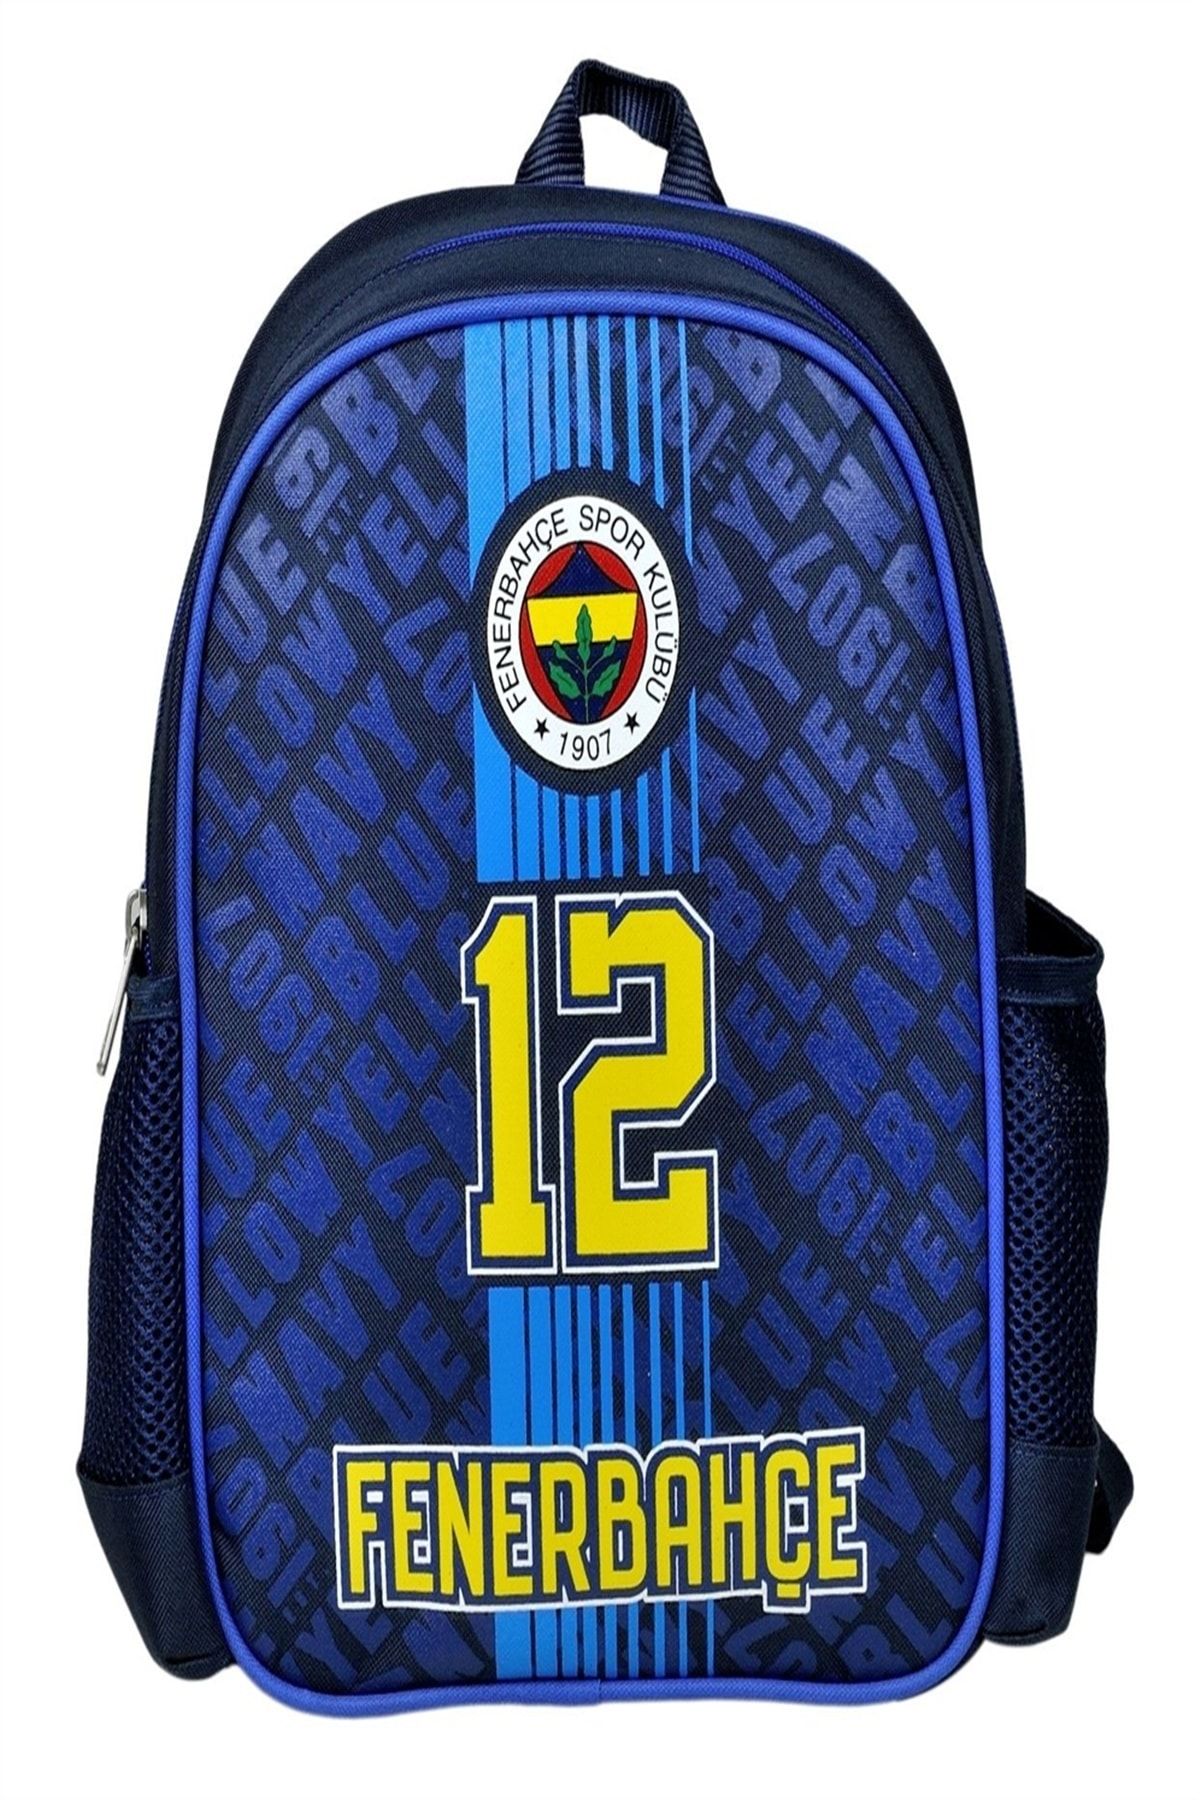 Fenerbahçe Fenerbahçe Tek Bölme Anaokulu Çantası (96171)